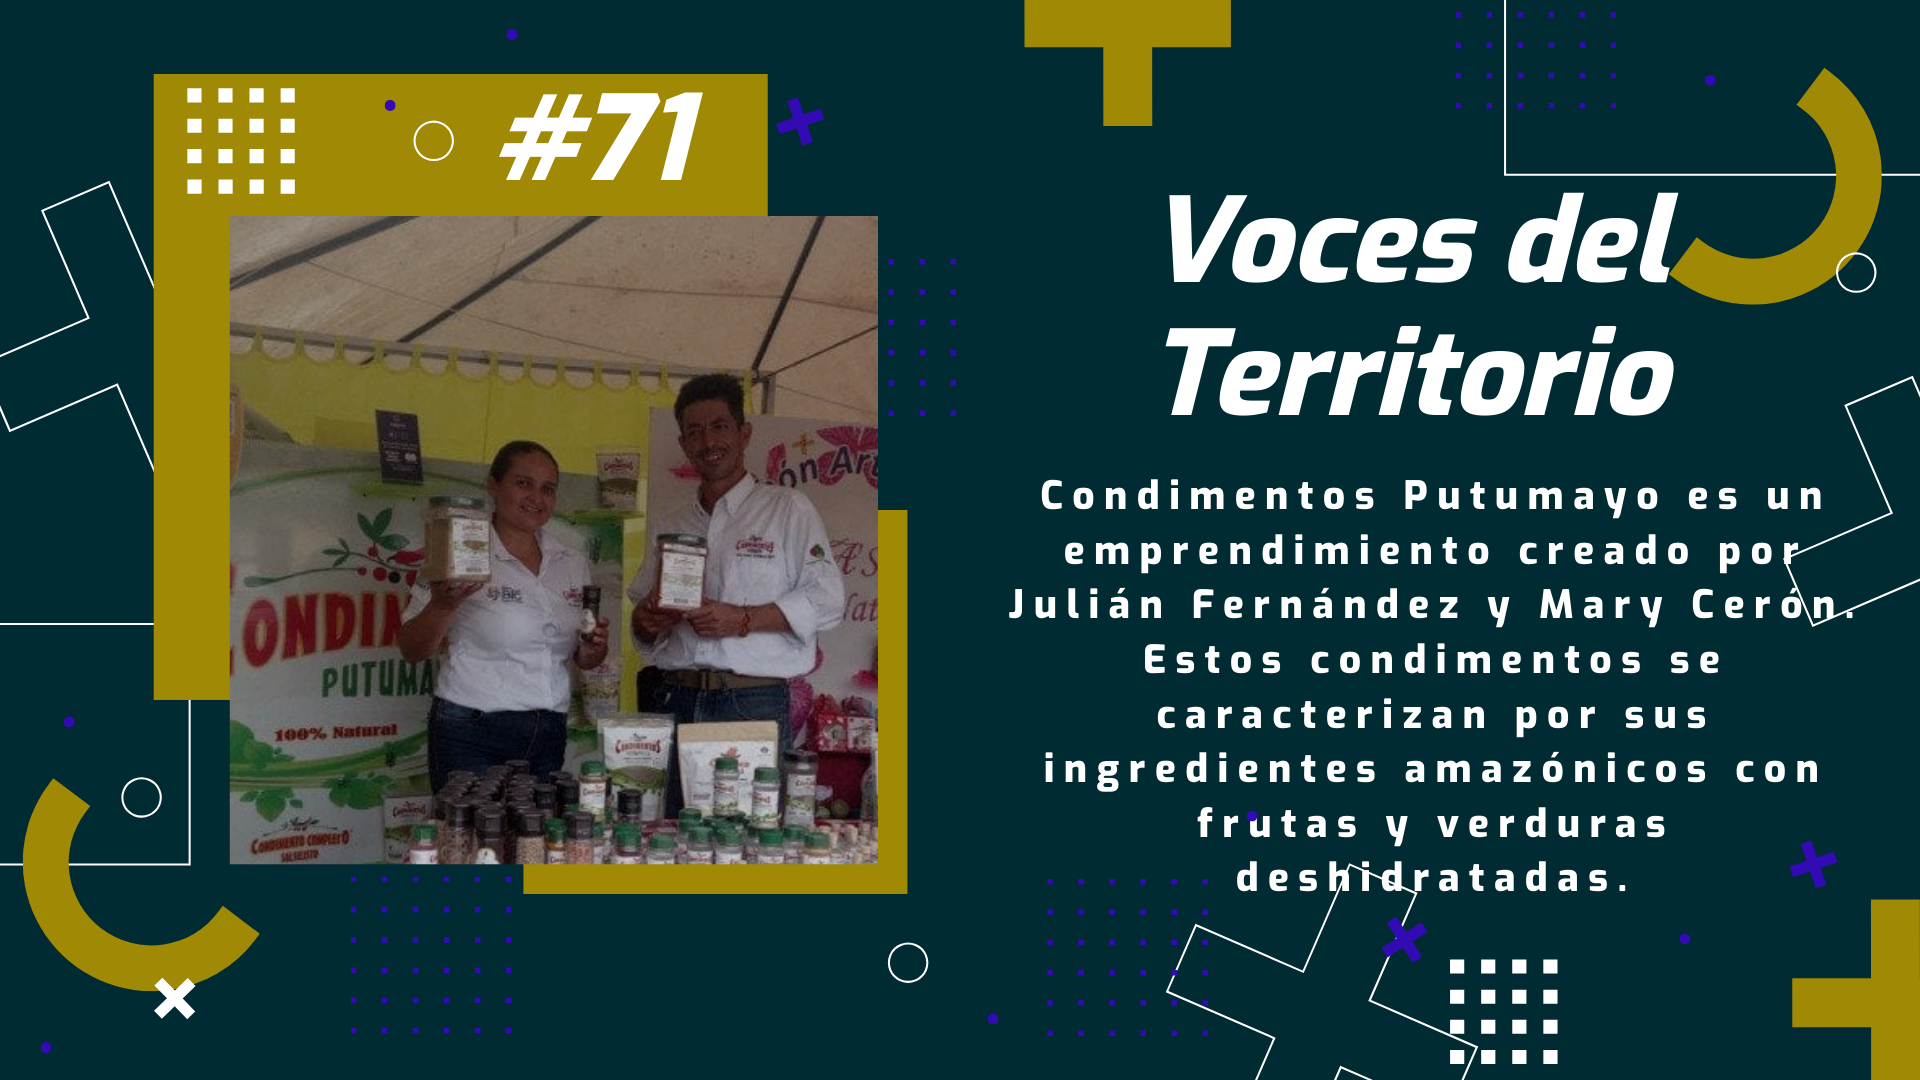 Voces del Territorio #71 Condimentos Putumayo, un emprendimiento que crece deleitando el paladar de los amantes de la cocina.